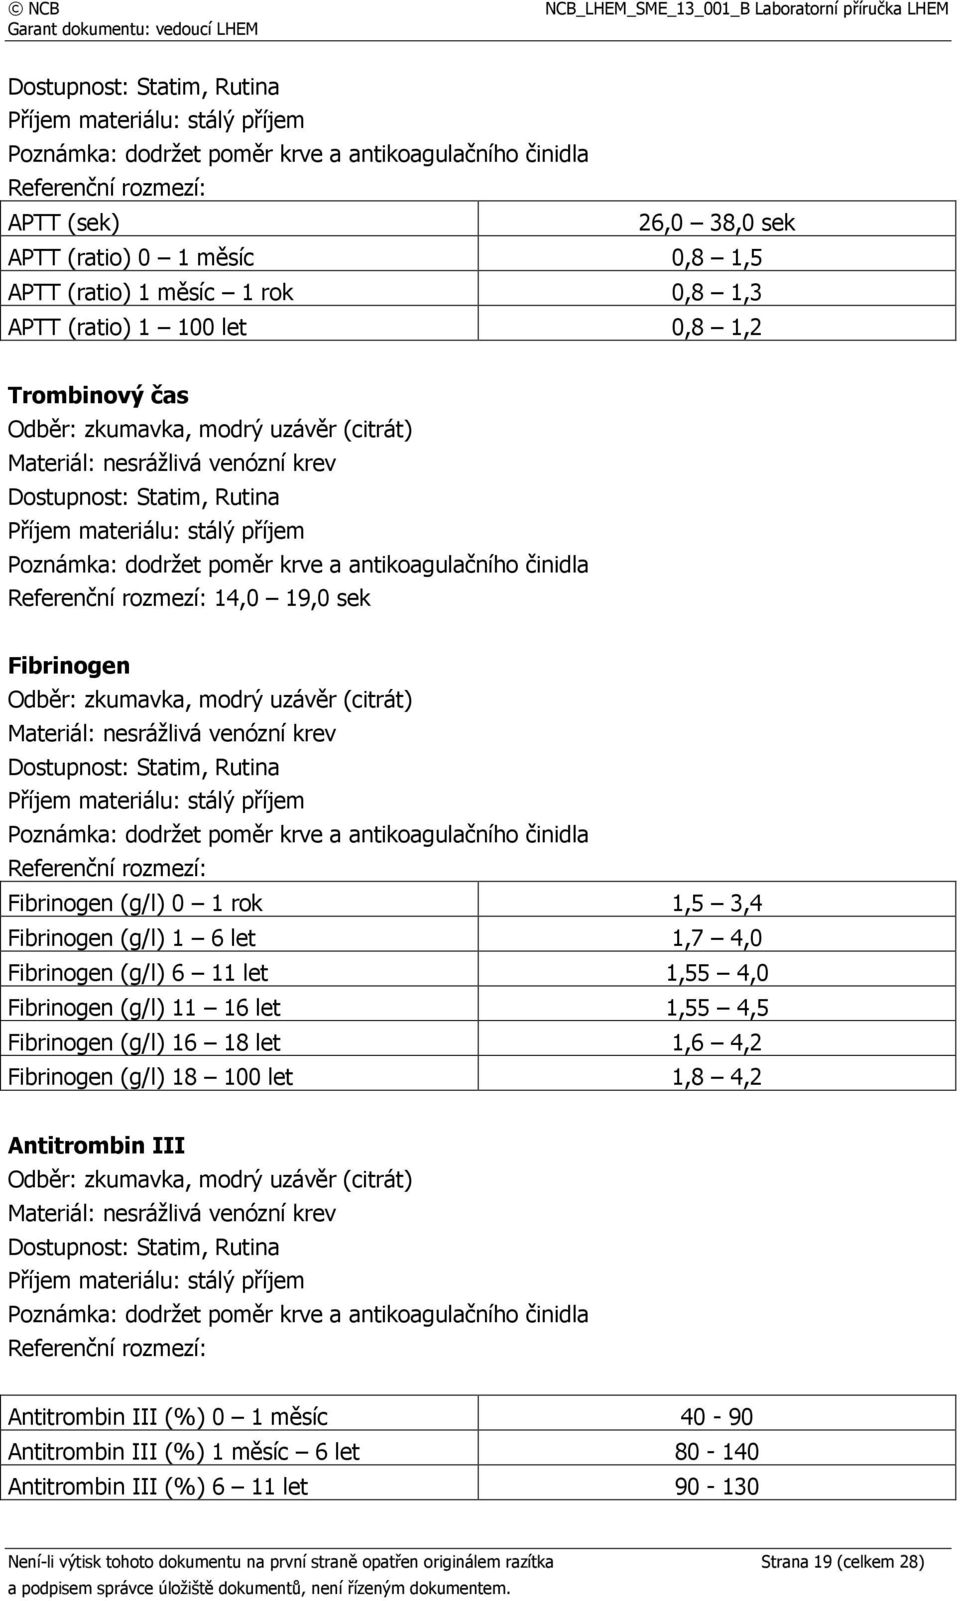 Fibrinogen (g/l) 11 16 let 1,55 4,5 Fibrinogen (g/l) 16 18 let 1,6 4,2 Fibrinogen (g/l) 18 100 let 1,8 4,2 Antitrombin III Dostupnost: Statim, Rutina Antitrombin III (%) 0 1